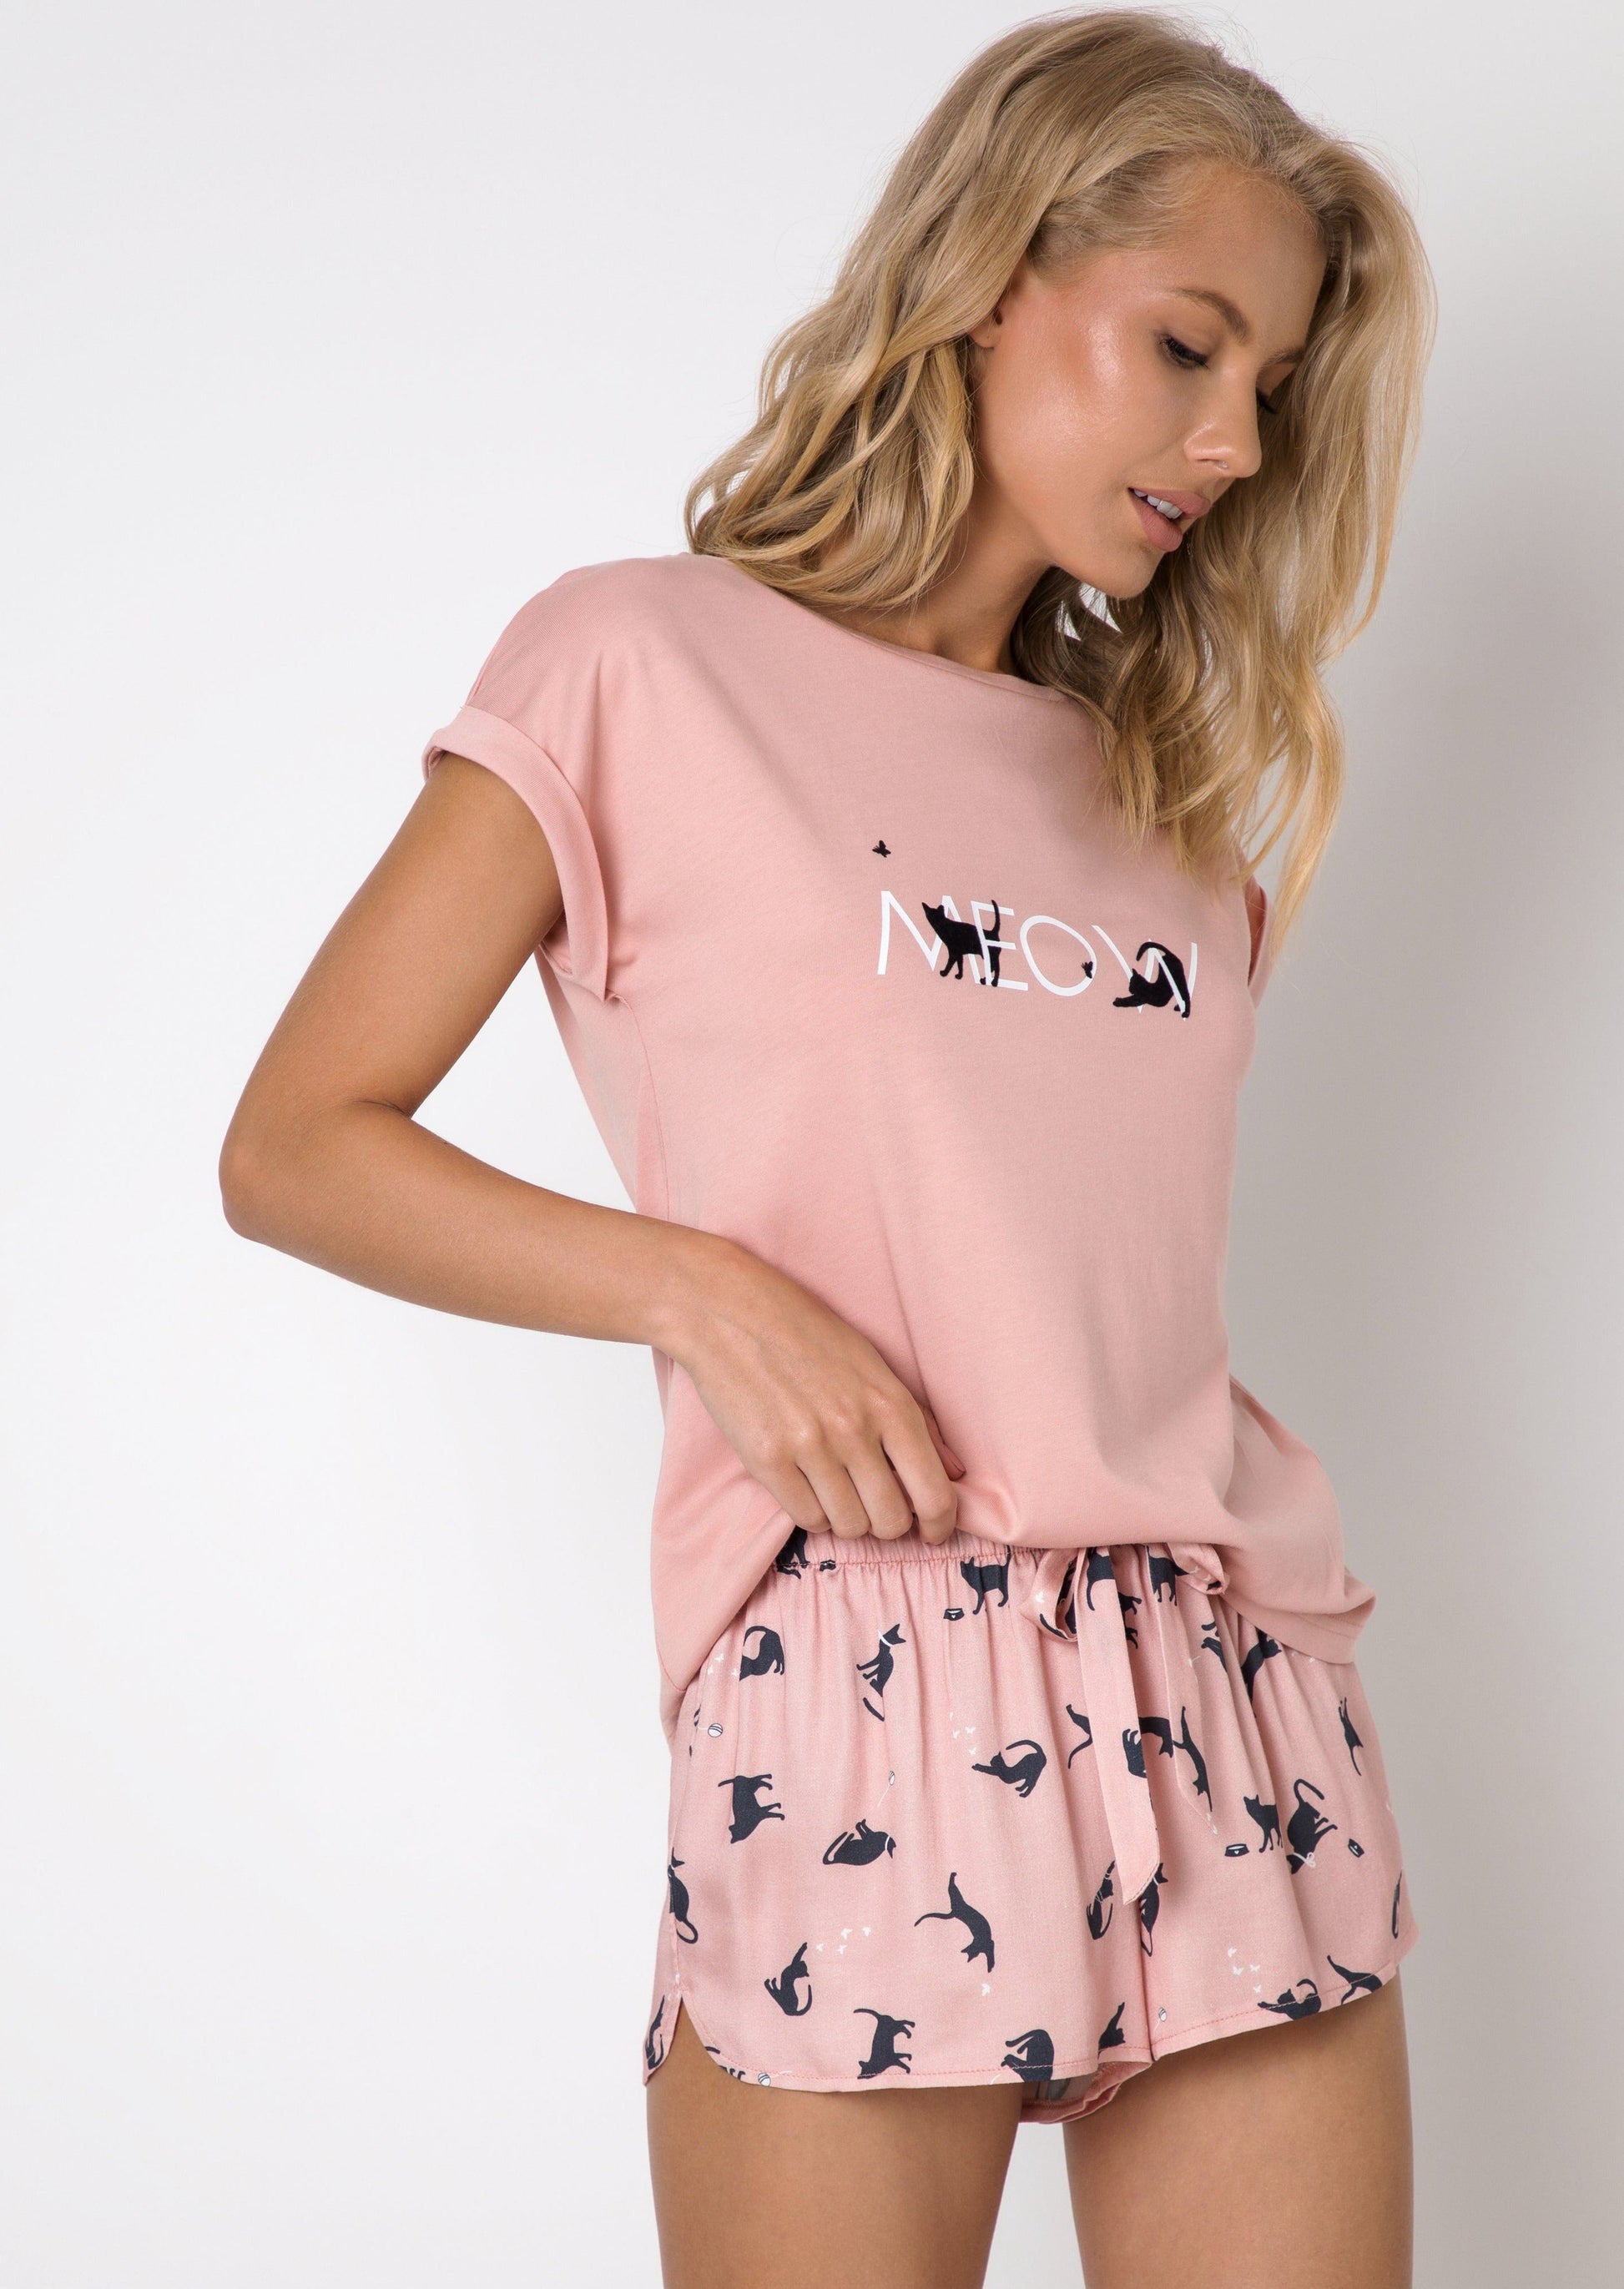 Girls corner. Mona пижама женская с шортами (розовый + черный, 40(l)). Пижама женская с шортами. Пижама с шортами розовая. Пижама в розовой расцветке.